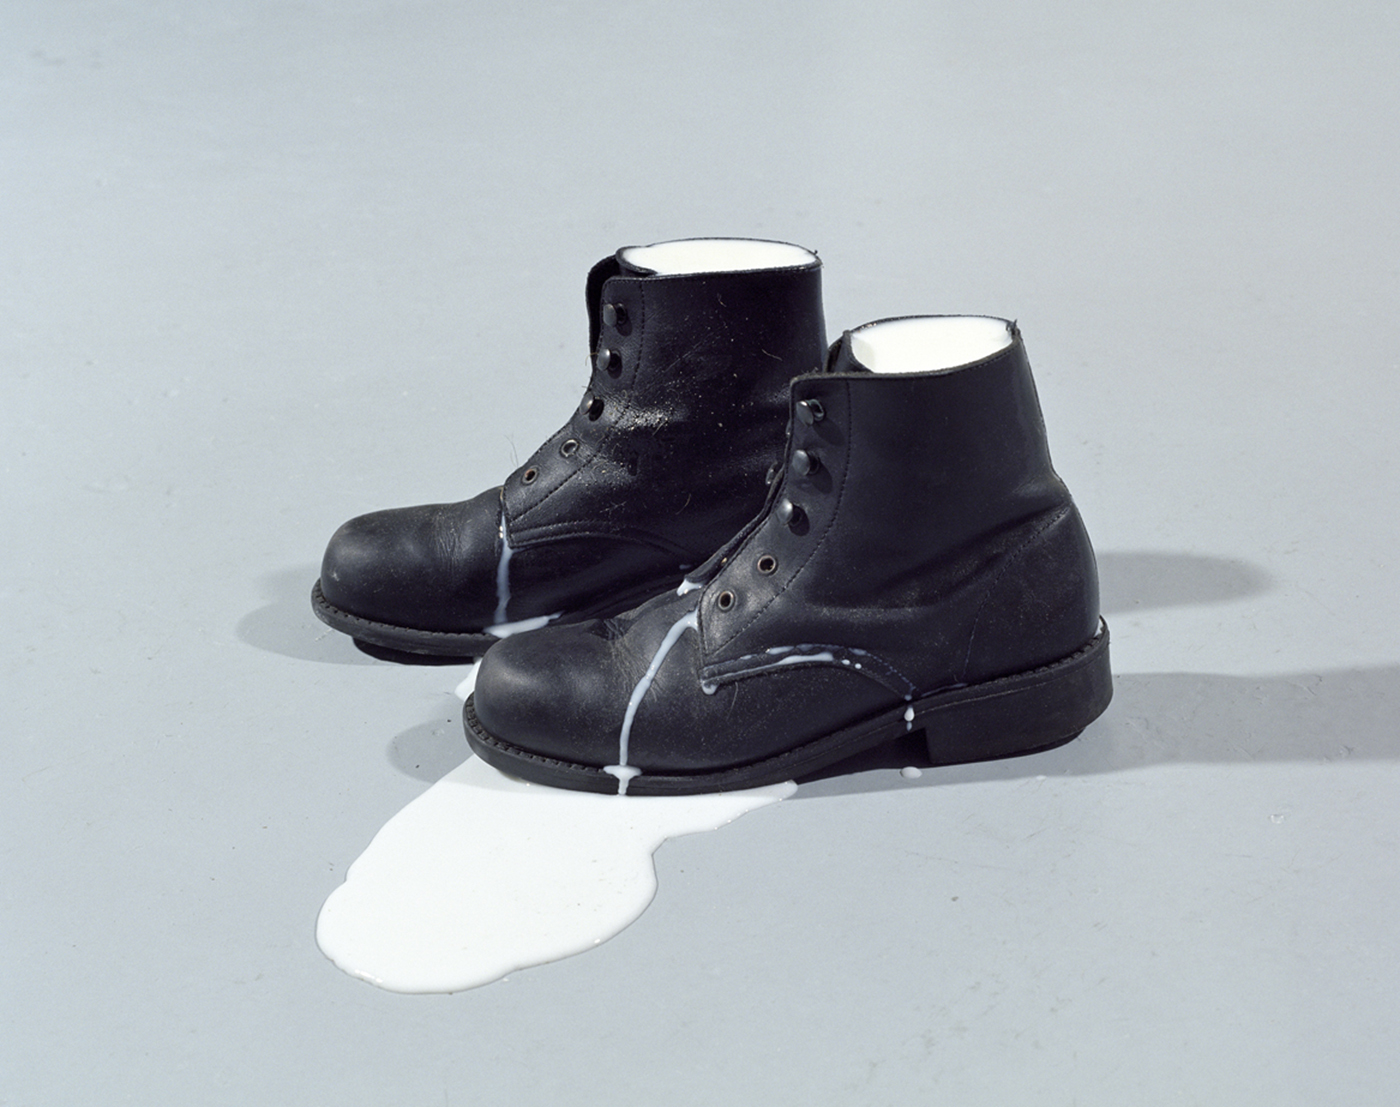 Les chaussures de lait IV B (srie chaussures de lait), 2002